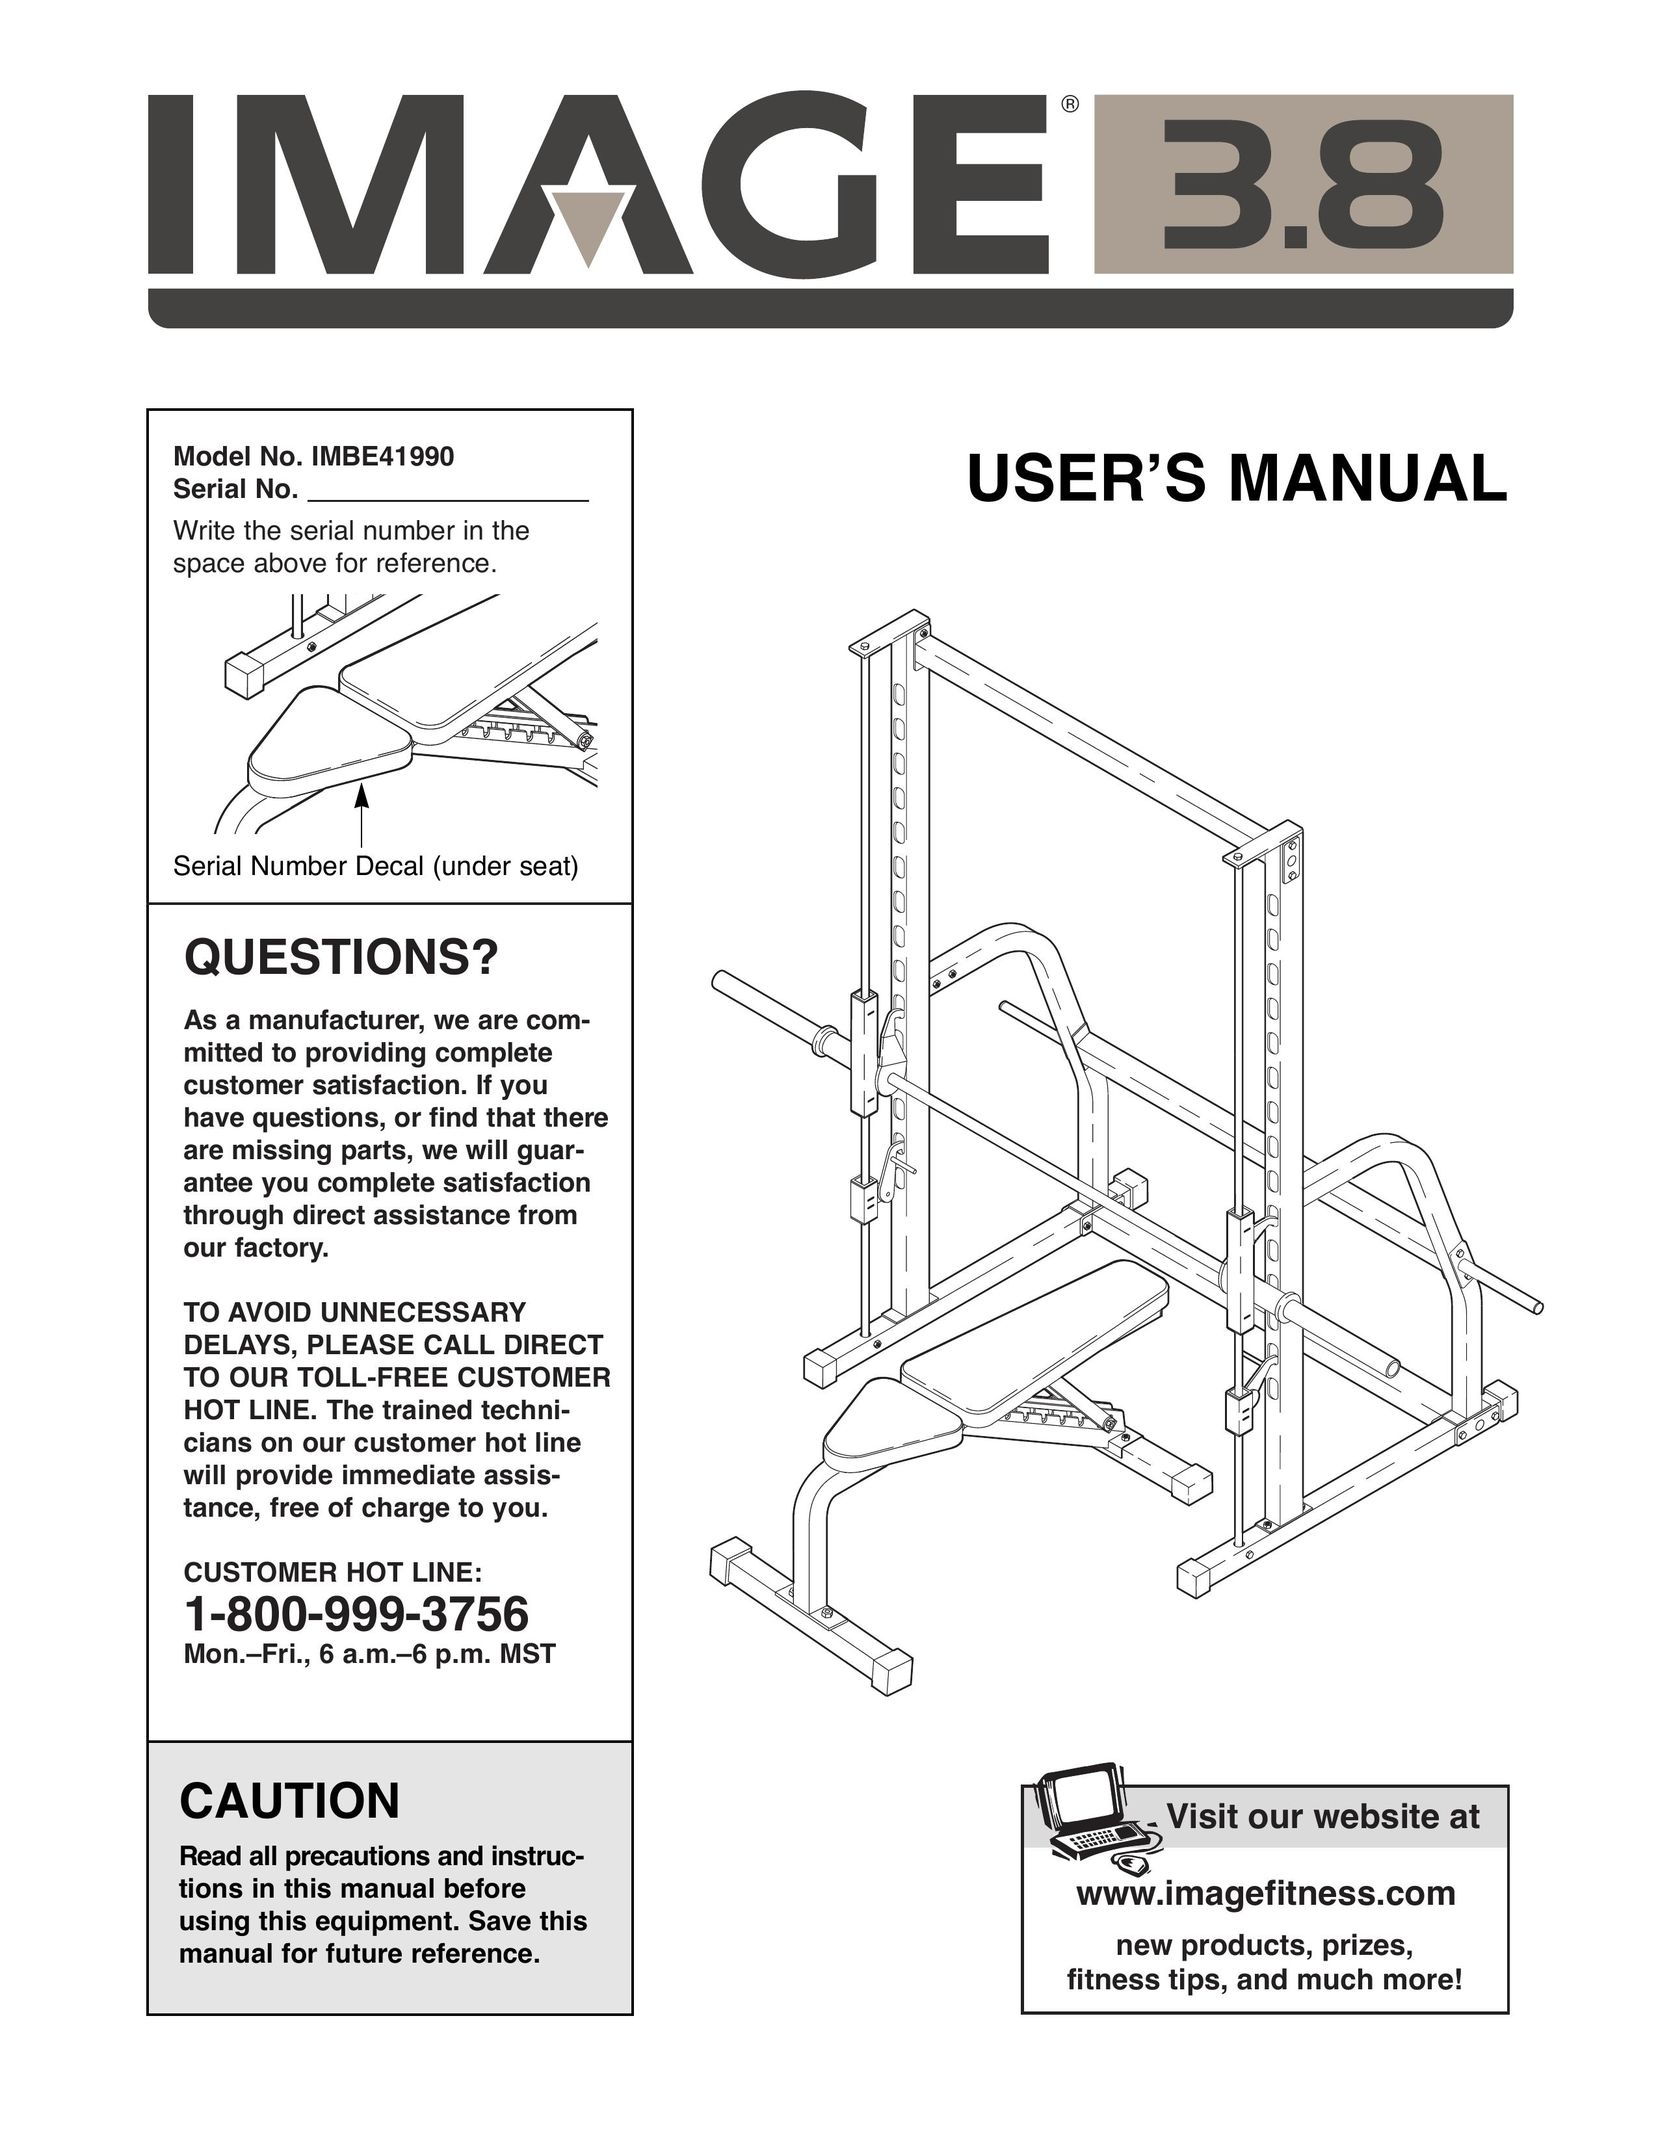 Image IMBE41990 Home Gym User Manual